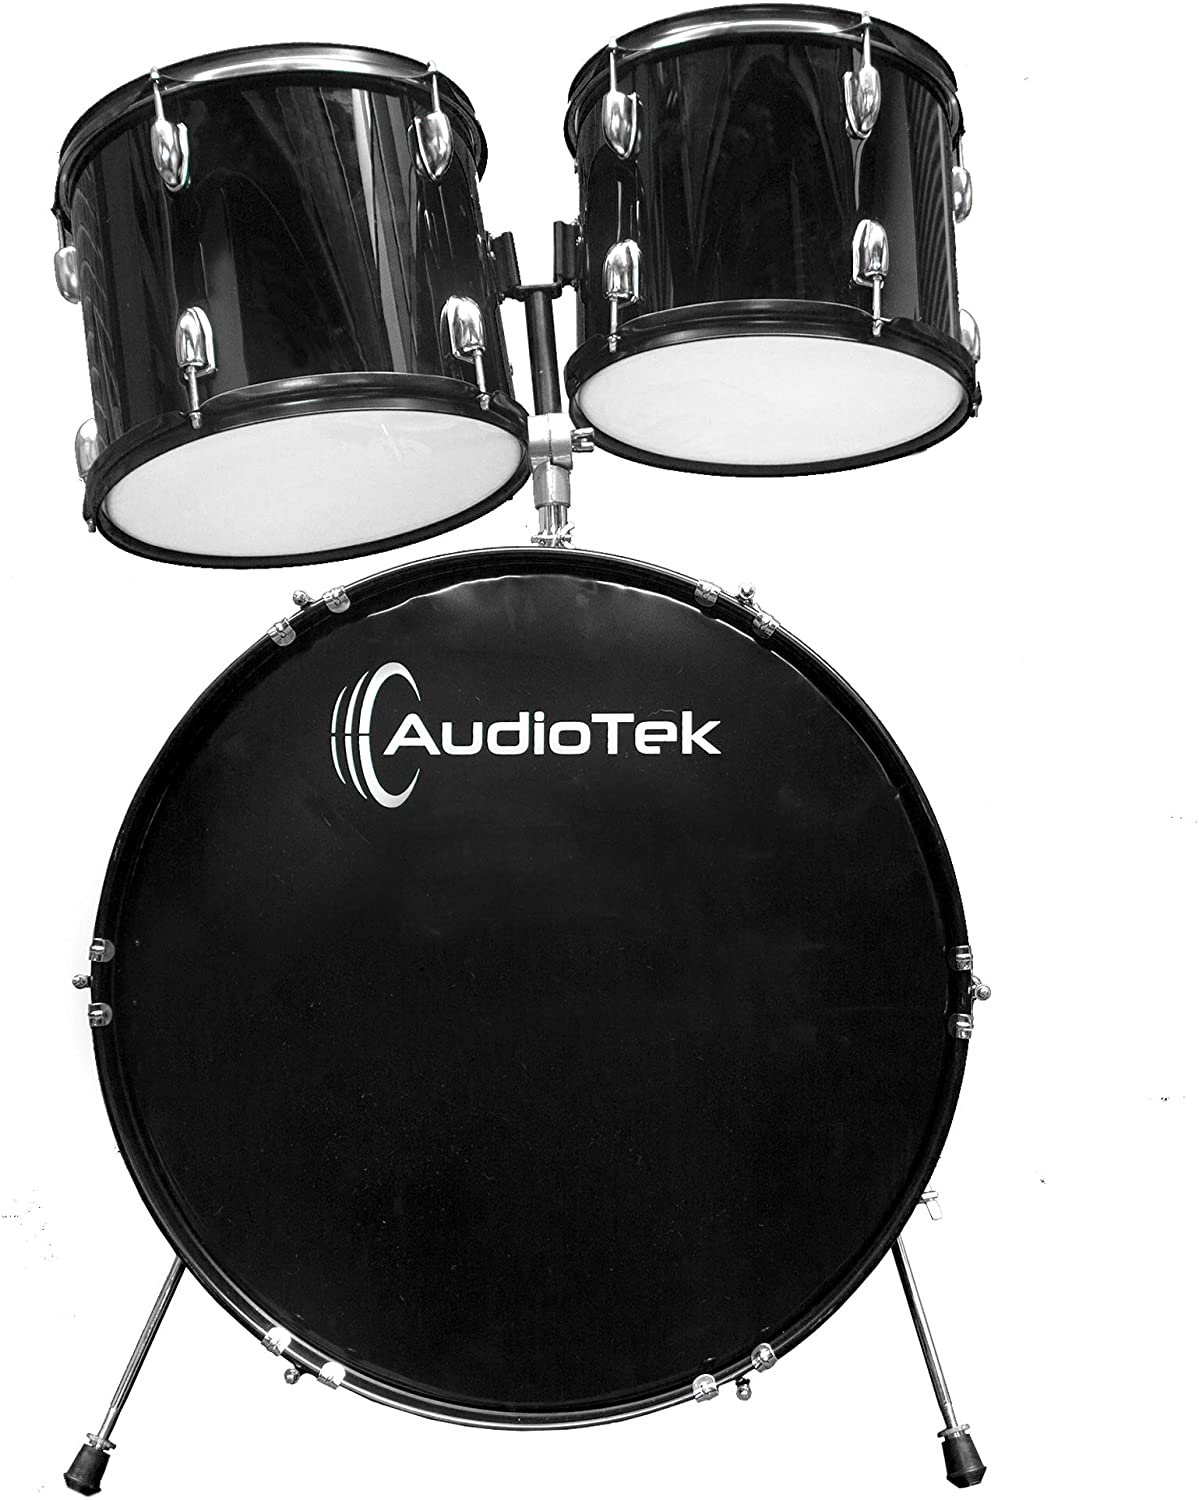 Pro System Audiotek Bateria Acustica Musical Musica Profesional 5 Piezas  Tambor 2 platillos Drum Set Bateria Acustica Bateria Musical Negra Bateria  Baterista - Nirbanda Music